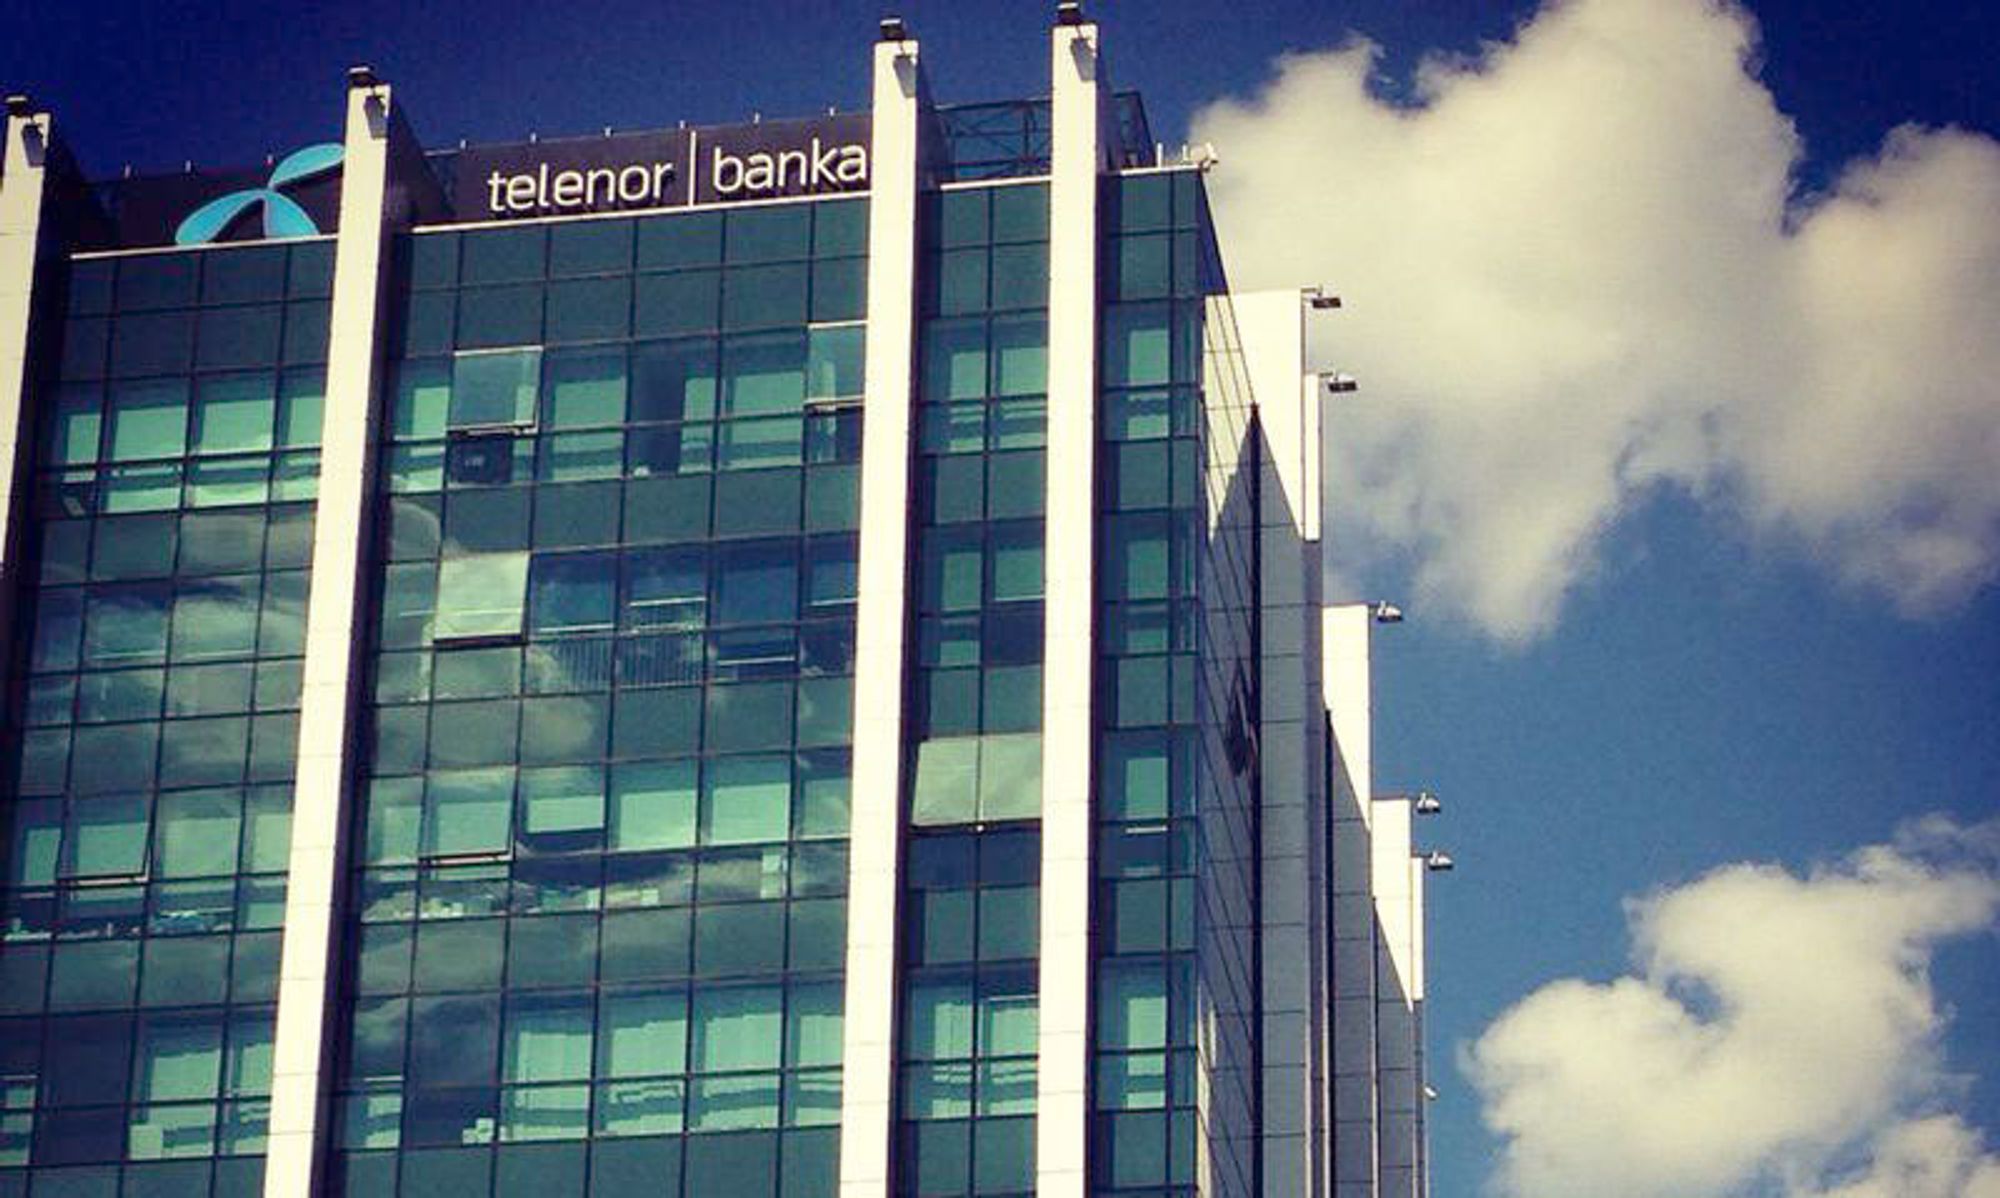 Telenor banka får ny majoritetseier når River Styxx Capital kjøper 85 prosent av aksjene fra Telenor, som beholder 15 prosent.